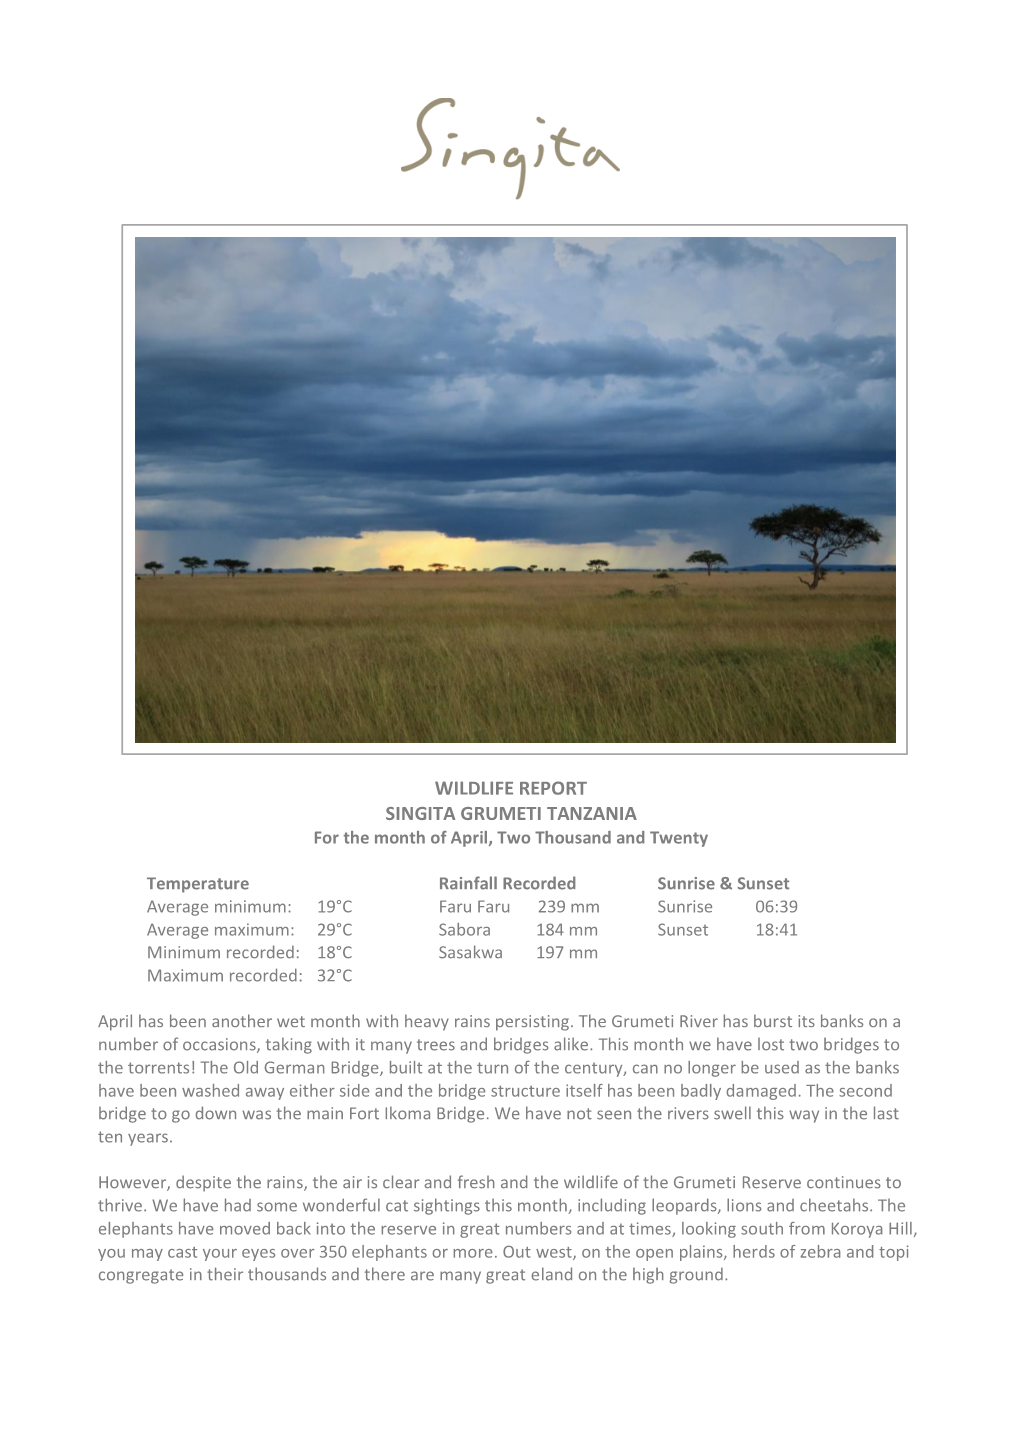 WILDLIFE REPORT SINGITA GRUMETI TANZANIA for the Month of April, Two Thousand and Twenty